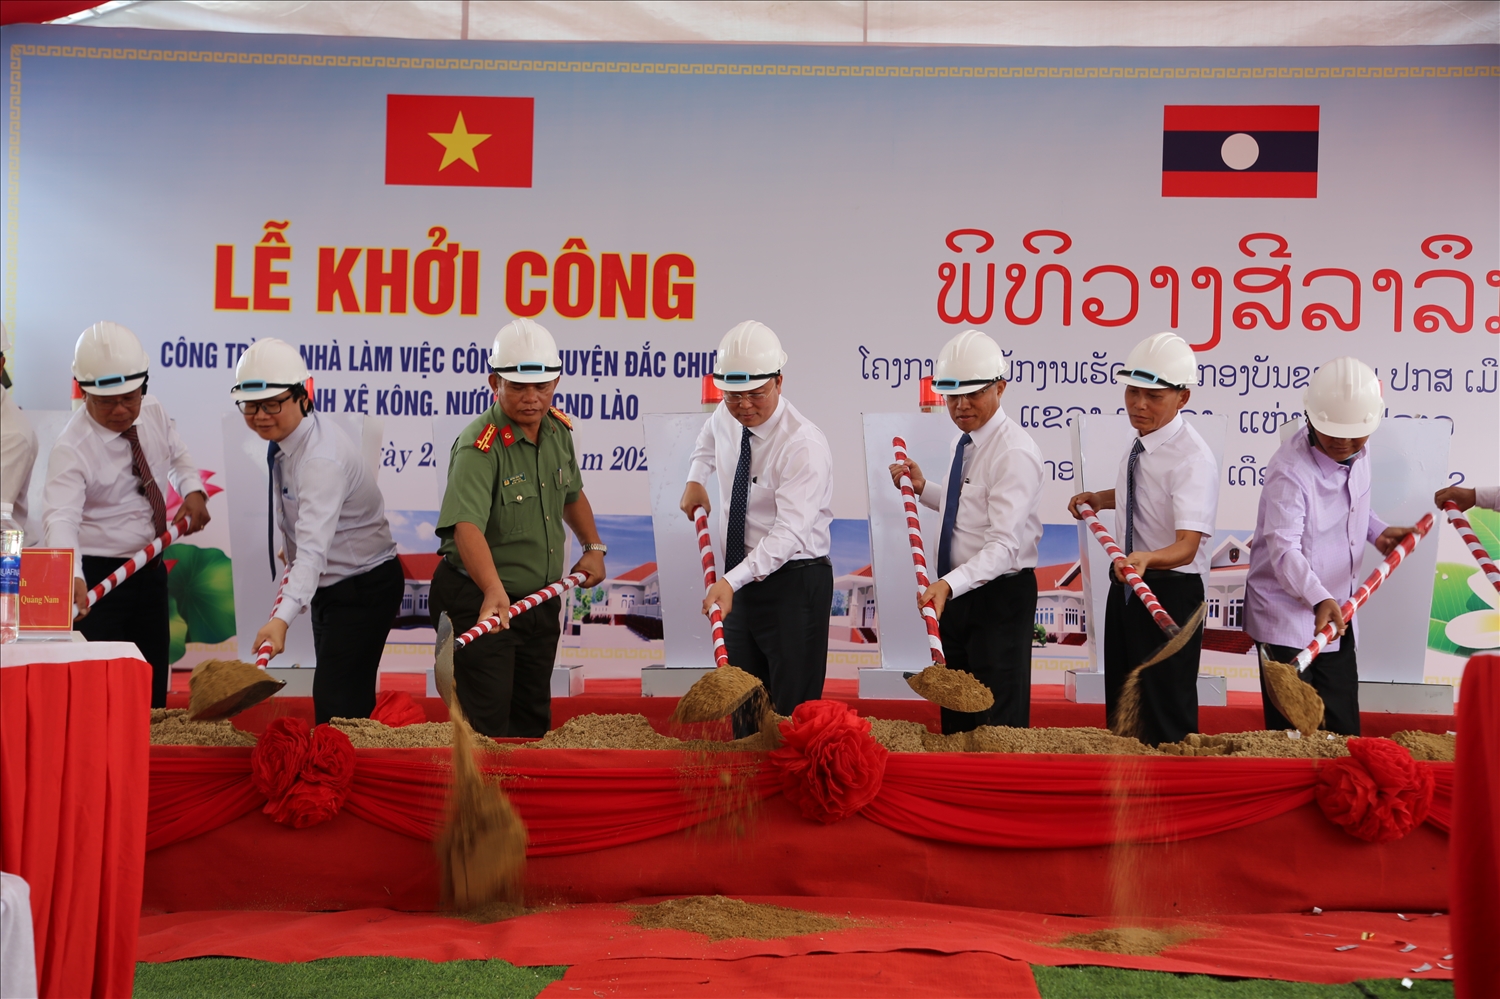 Đại diện lãnh đạo Quảng Nam - Sê Kông thực hiện nghi thức khởi công nhà làm việc Công an huyện Đắc Chưng